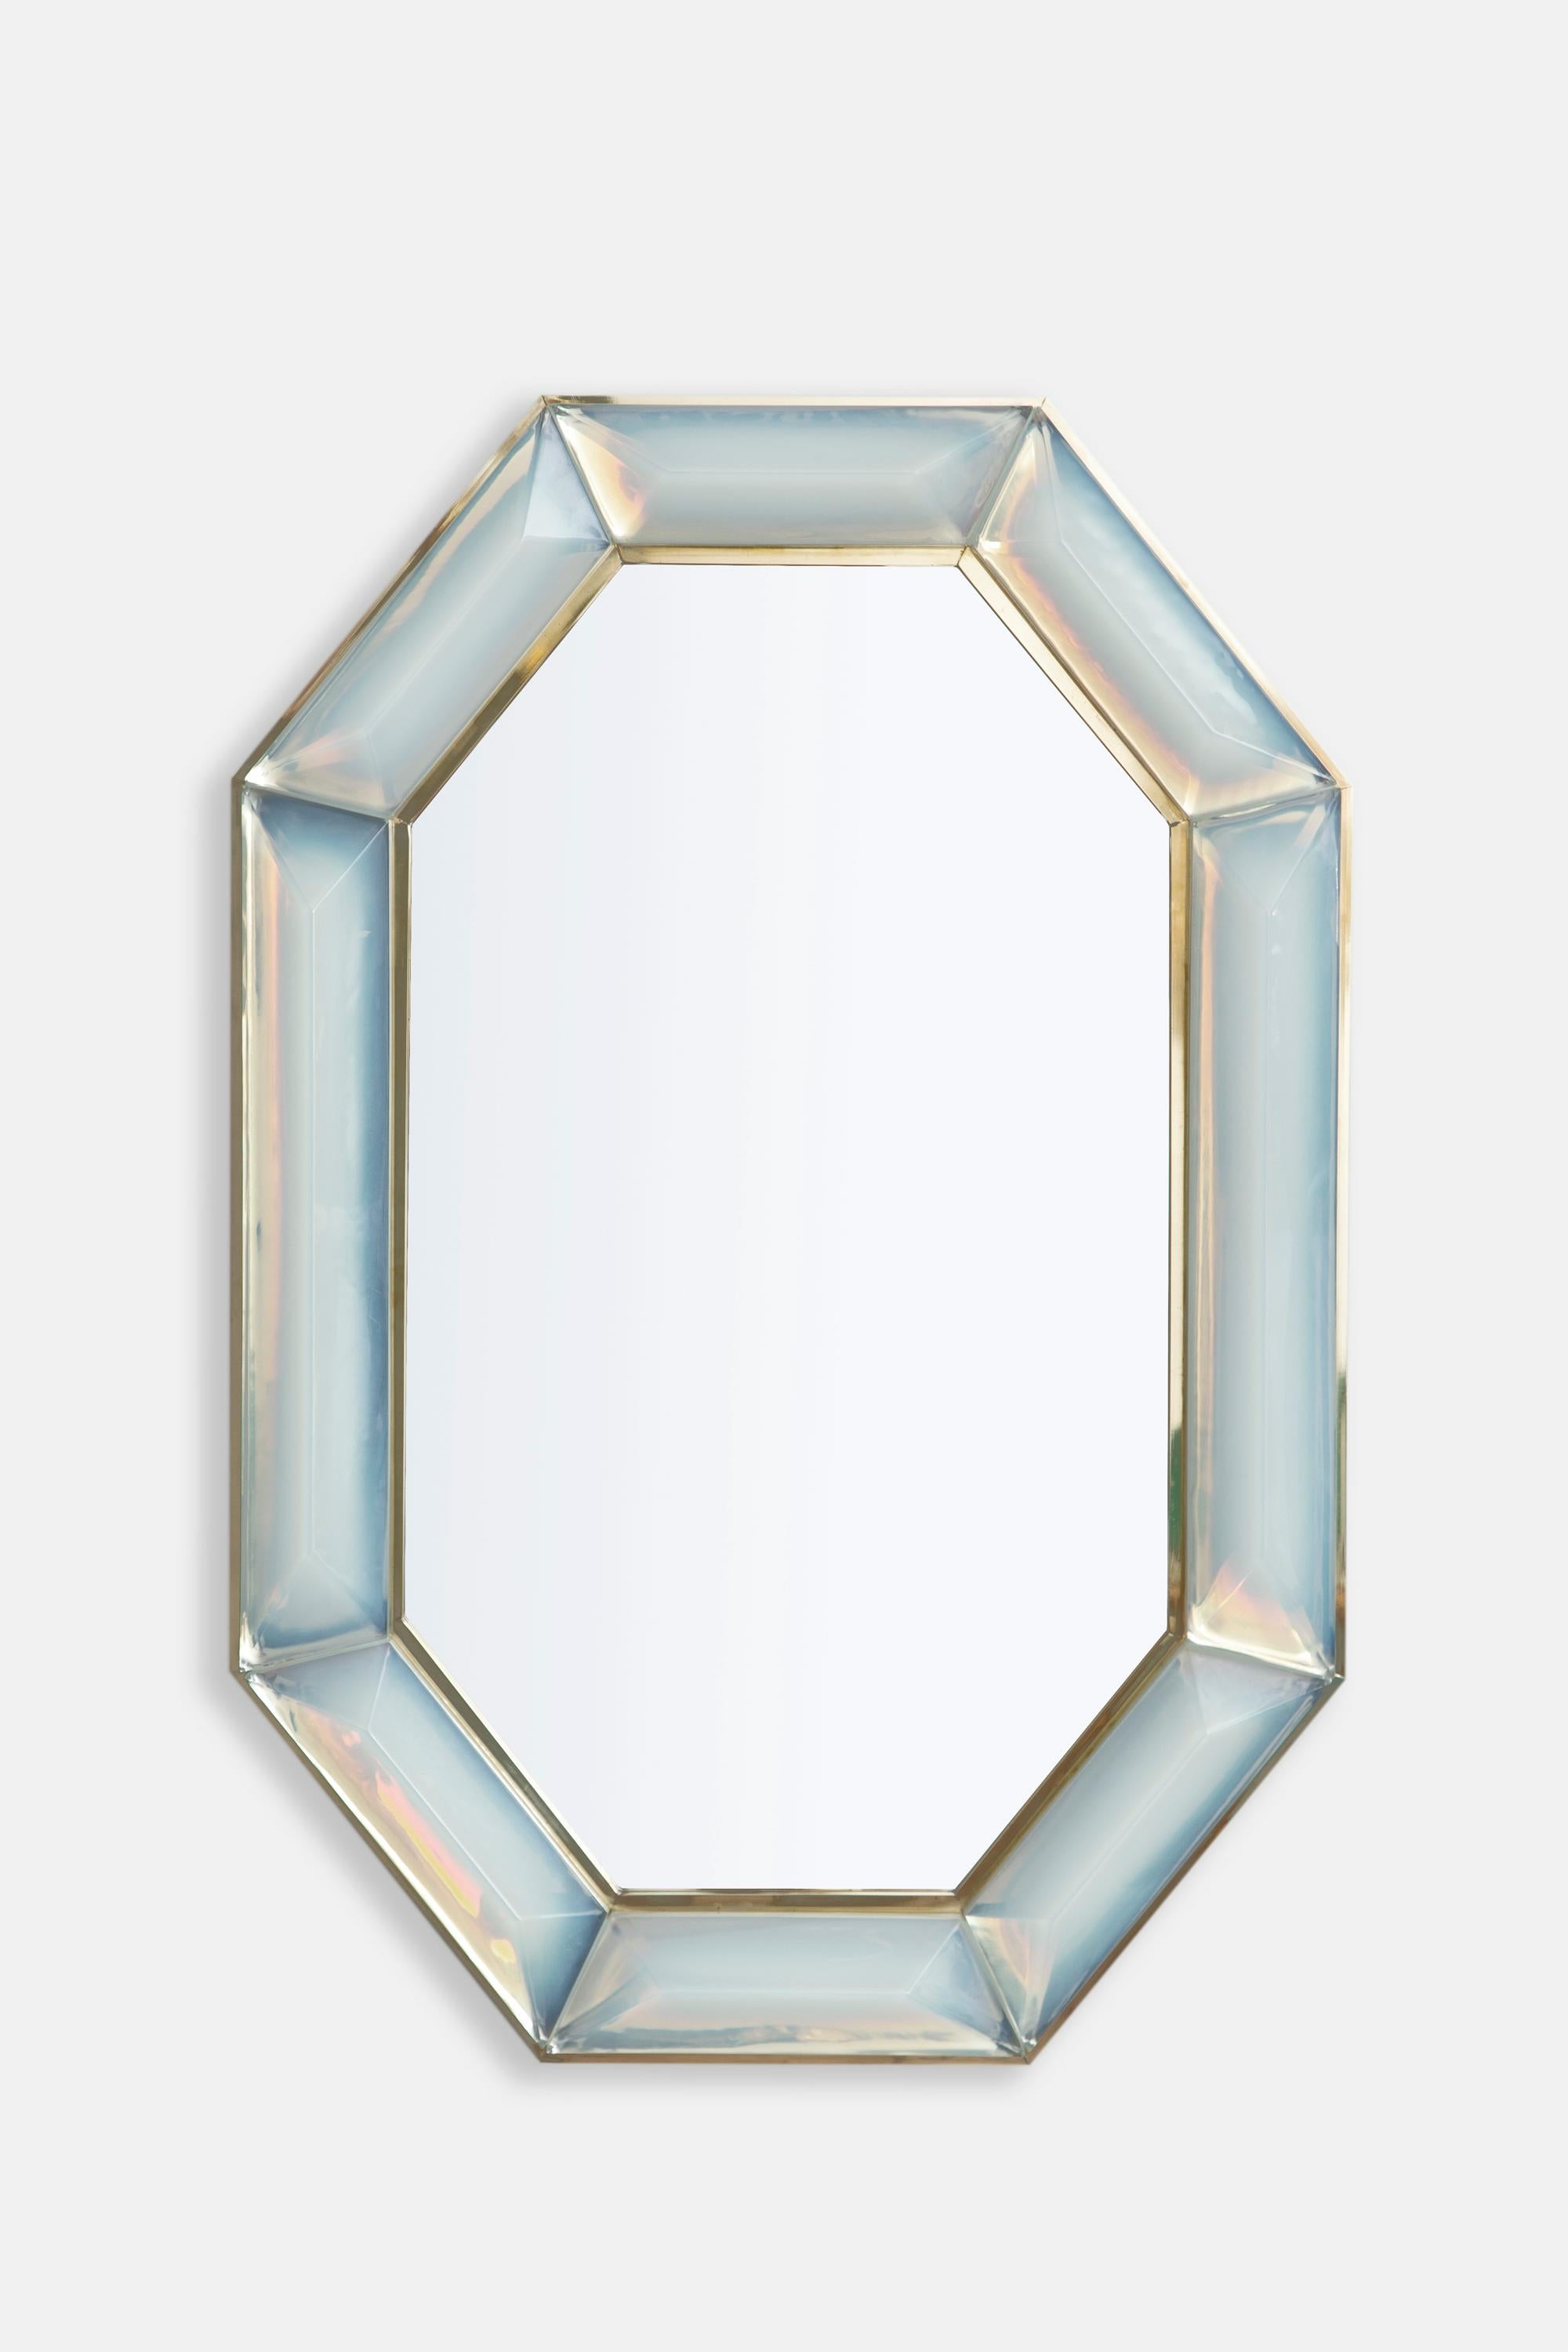 Miroir octogonal sur mesure en verre de Murano opalin irisé, en stock.
Bloc de verre opalin irisé, vif et intense, présentant des inclusions d'air naturelles.
Motif à facettes hautement poli.
Galerie en laiton tout autour.
Chaque miroir est un luxe